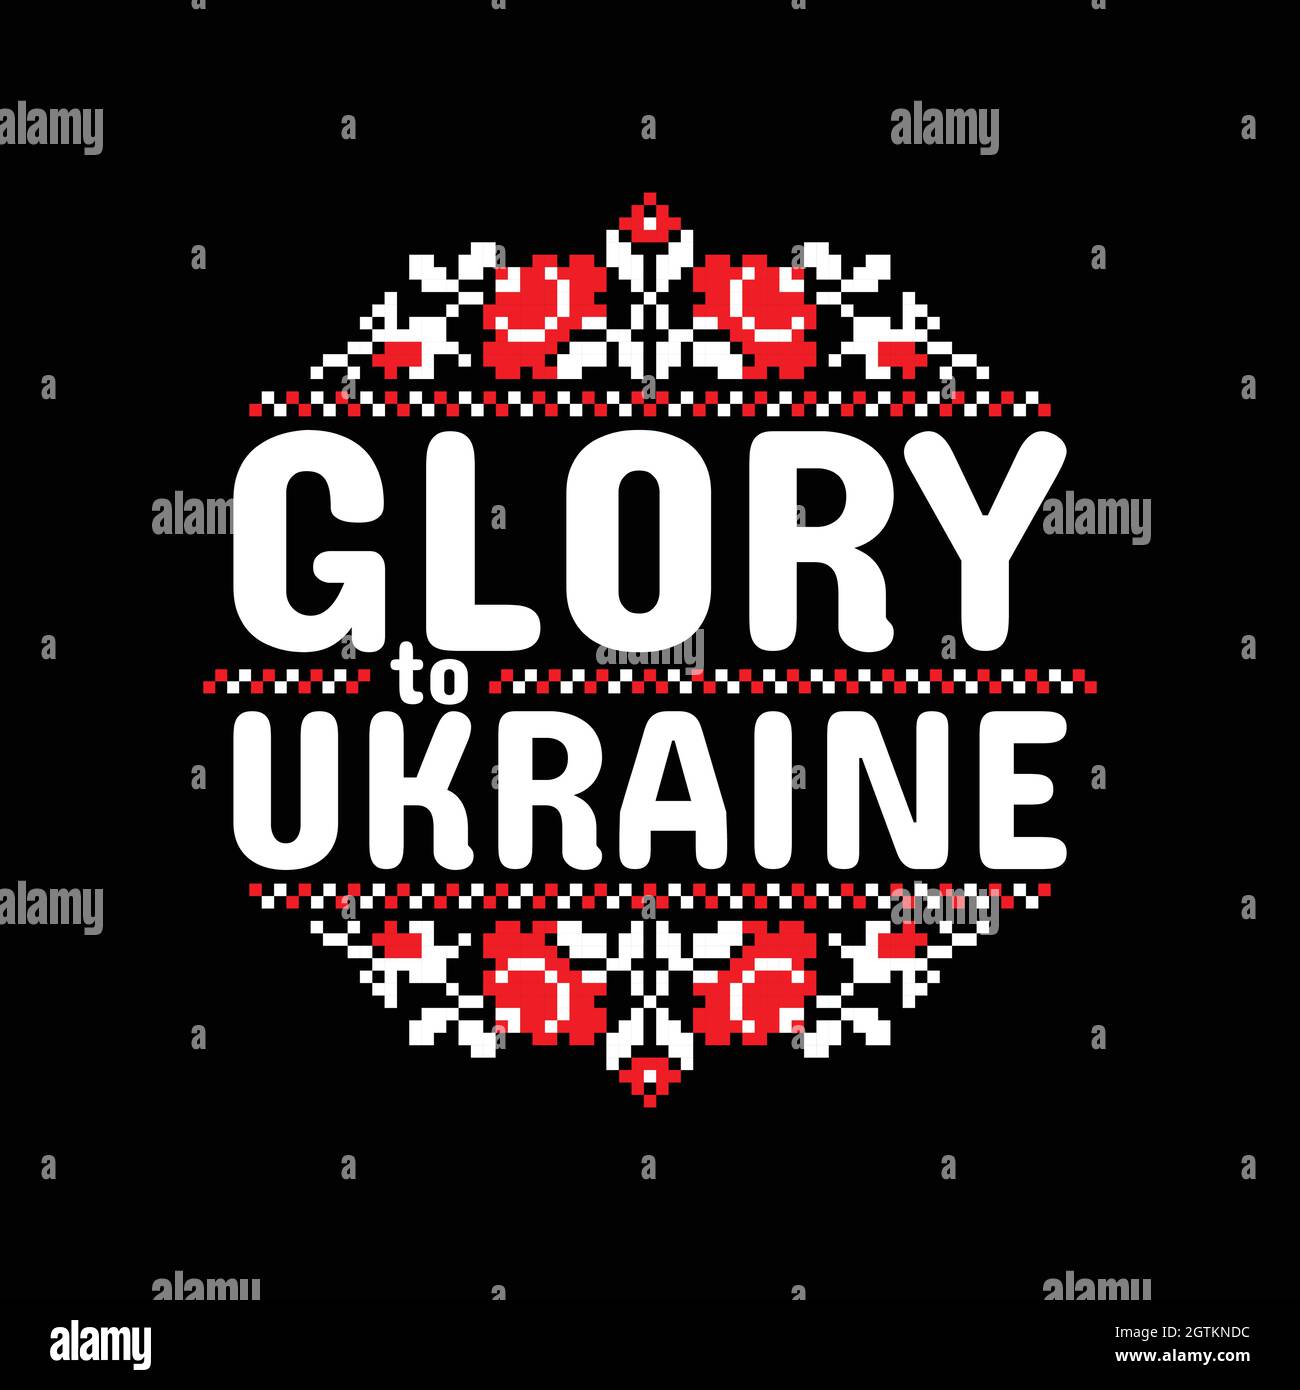 Segno circolare vettoriale con lo slogan patriottico ucraino 'Gloria all'Ucraina' e ornamento etnico nazionale ucraino intorno. Tradizionale ucrainia bianca e rossa Illustrazione Vettoriale